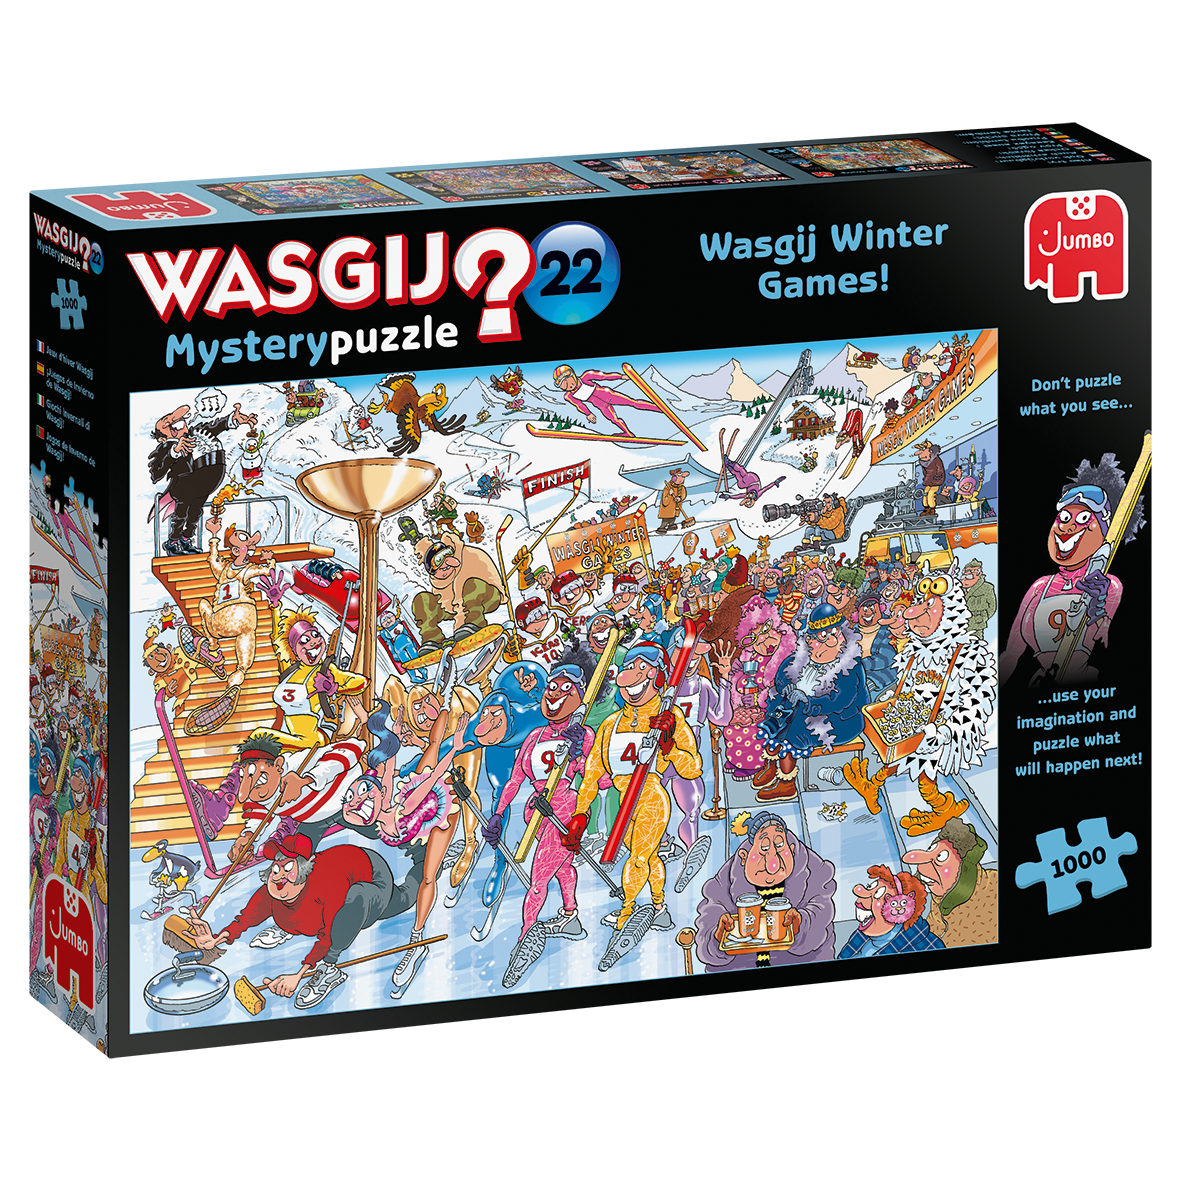 Puzzle - Wasgij Mystery 22 - Winterspiele 1000 Teile